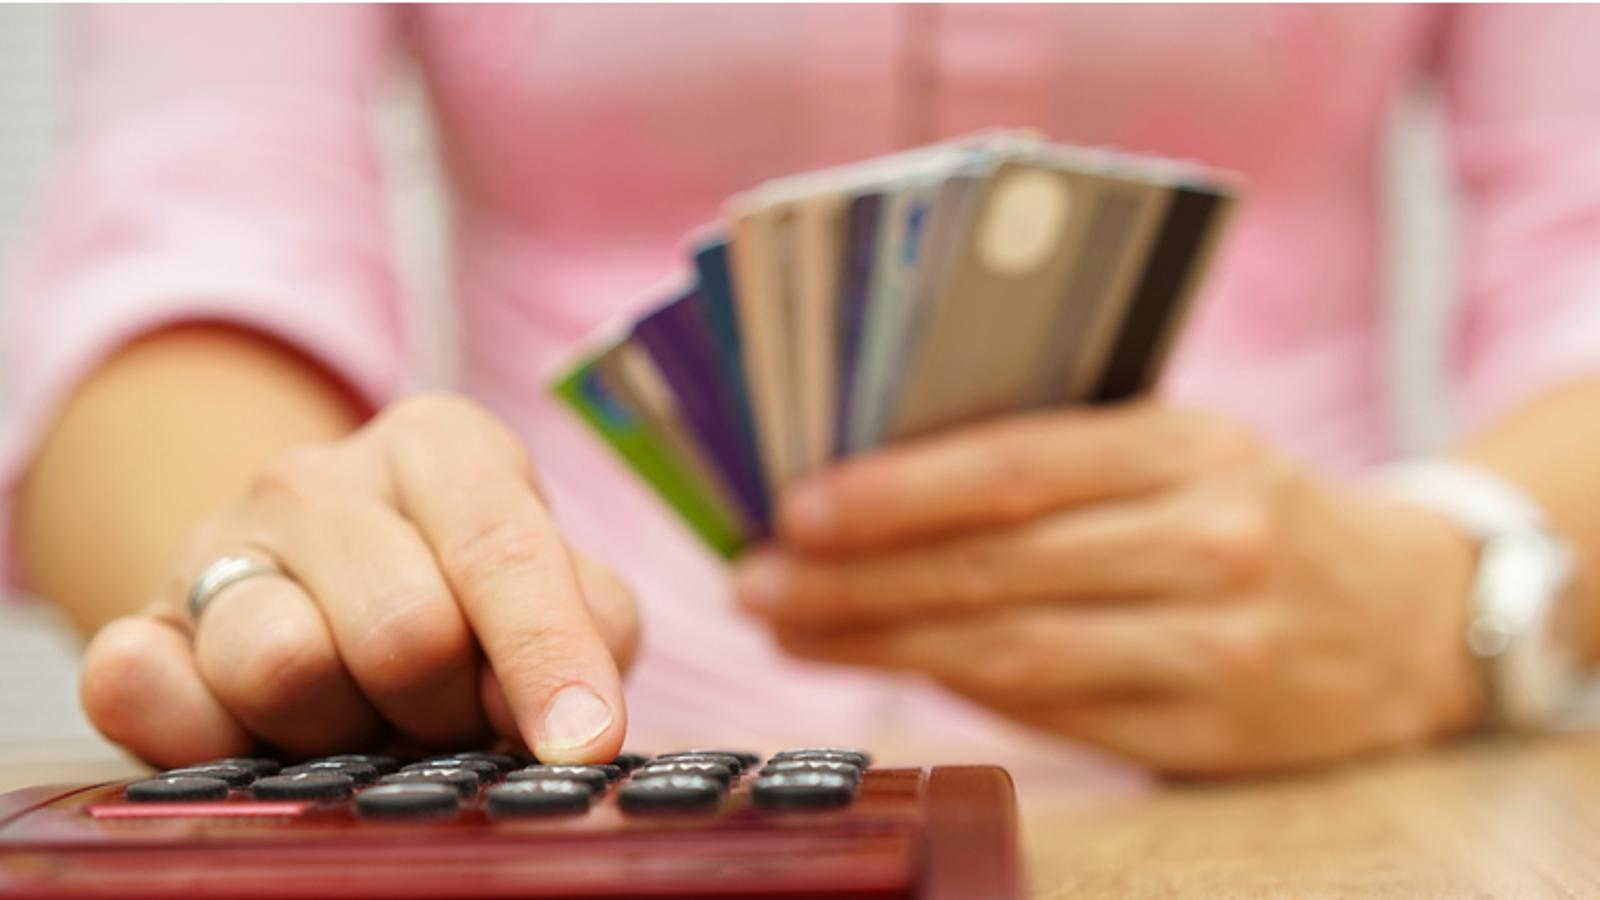 Beaucoup de Québécois ignorent comment payer moins de frais en utilisant leur carte de crédit